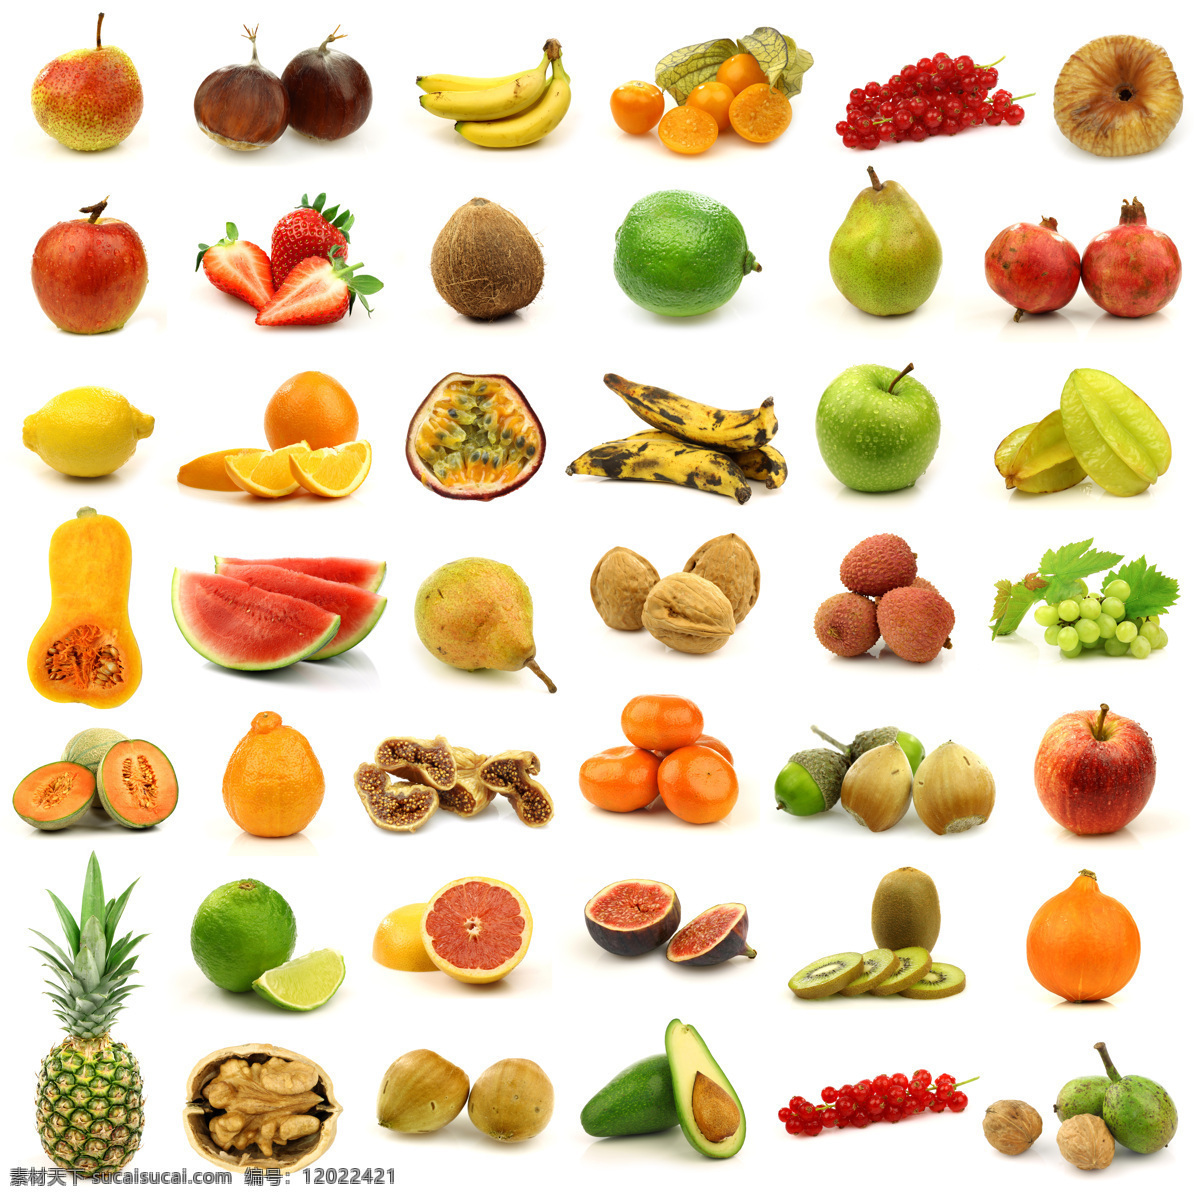 各种 水果 食物 合集 菠萝 木瓜 西瓜 西柚 苹果 香蕉 杨桃 橙子 水果图片 餐饮美食